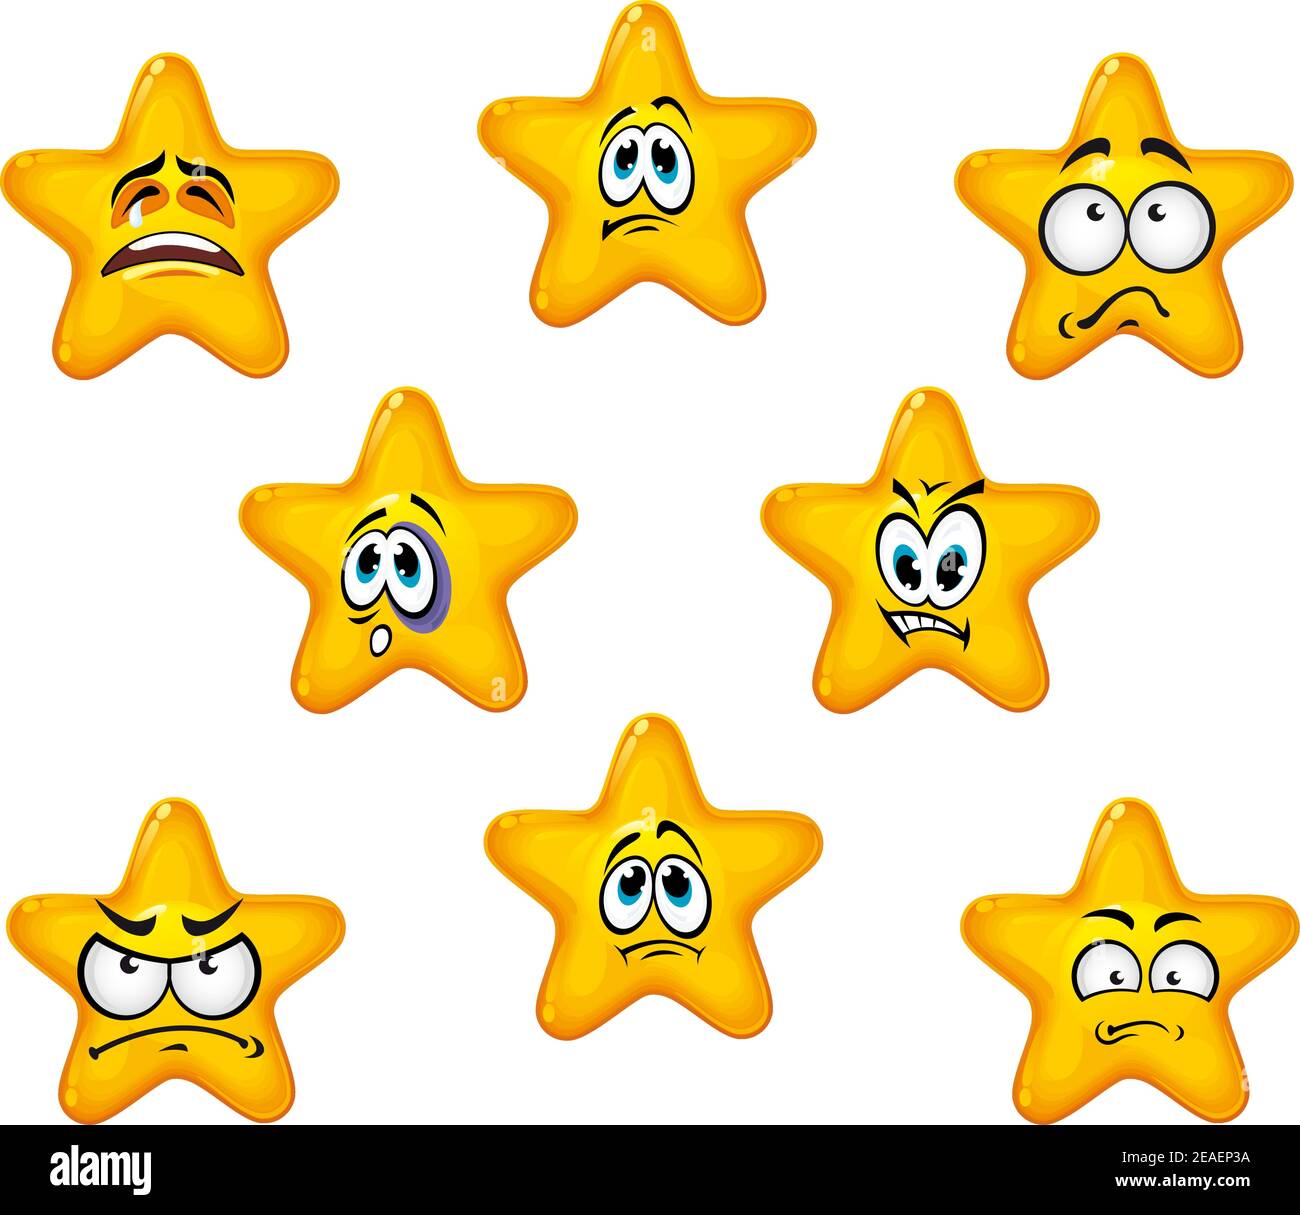 Icônes émotionnelles d'étoiles avec des émotions tristes et négatives Illustration de Vecteur